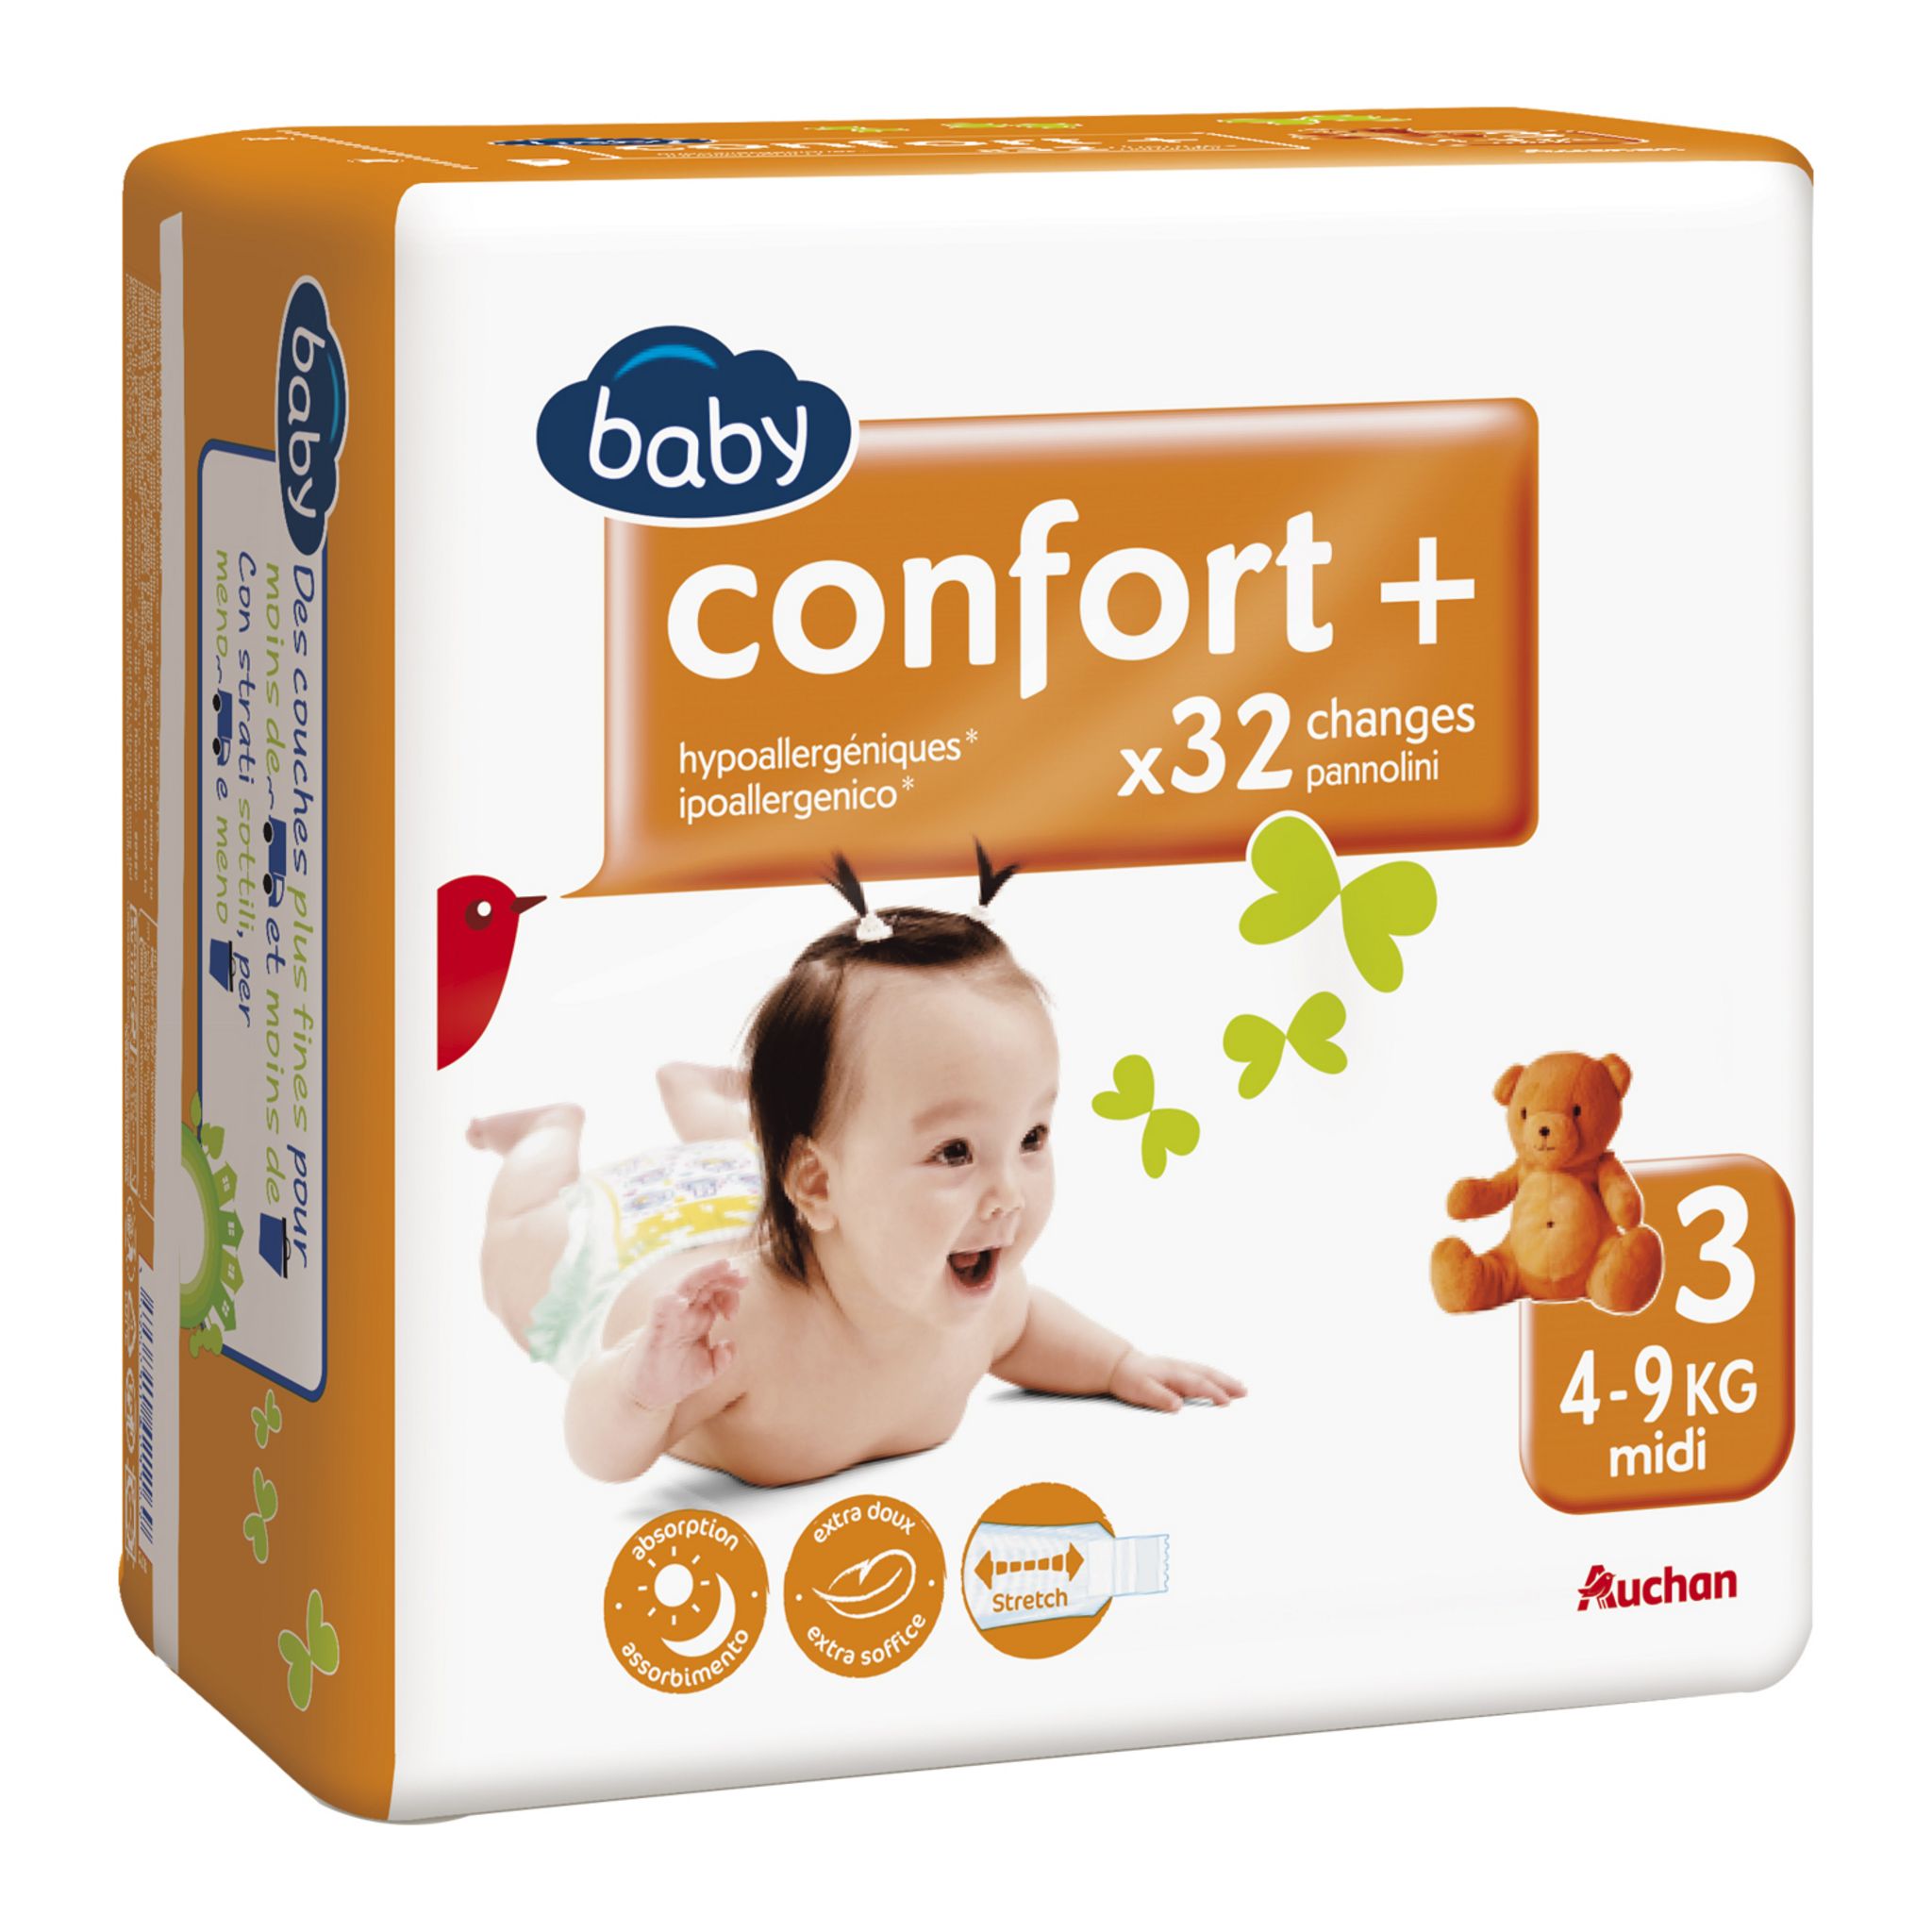 Promo Équipement bébé confort chez Auchan